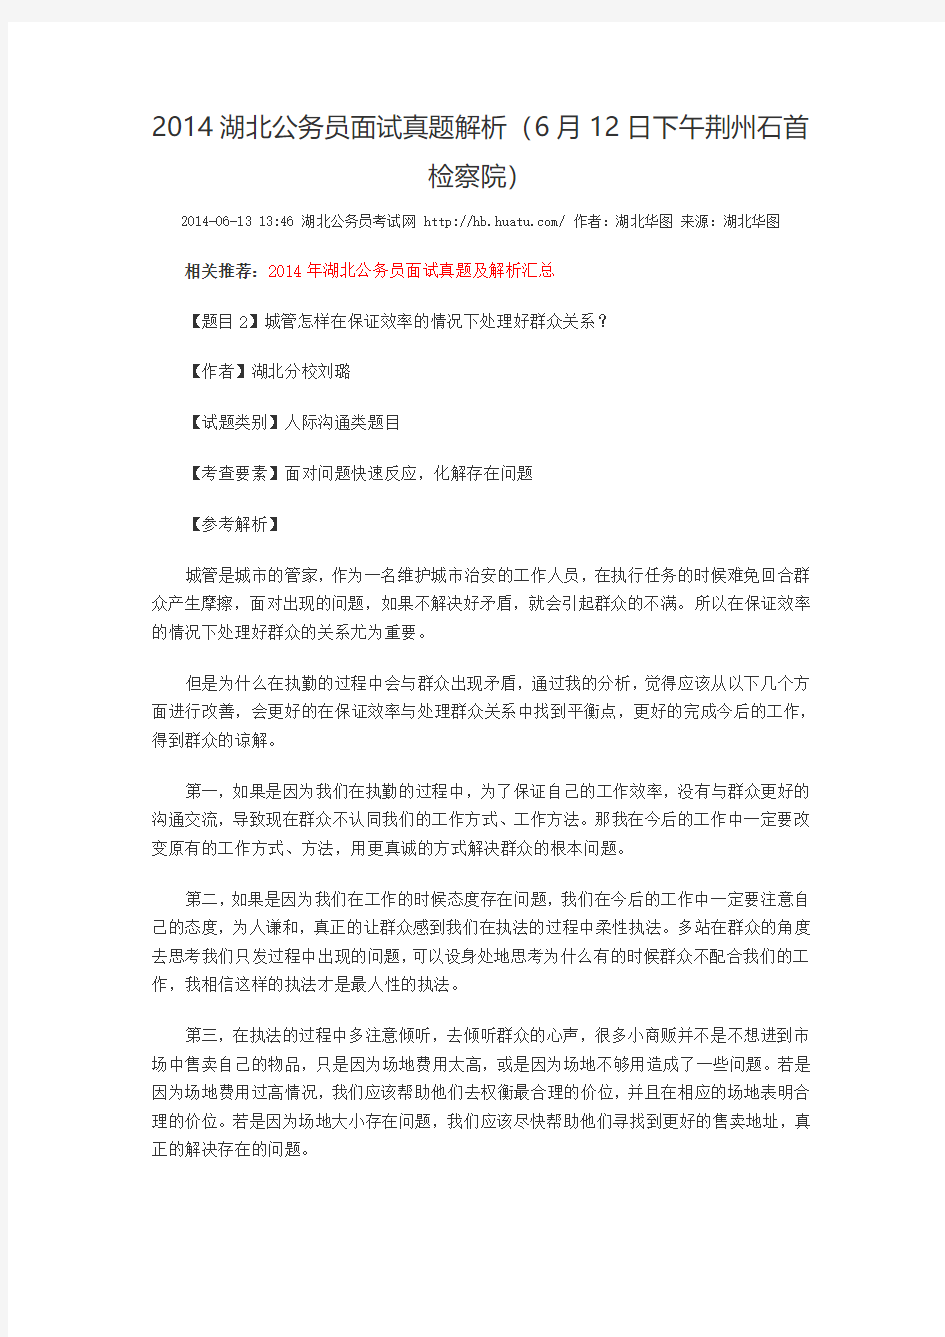 2014湖北公务员面试真题解析(6月12日下午荆州石首检察院)